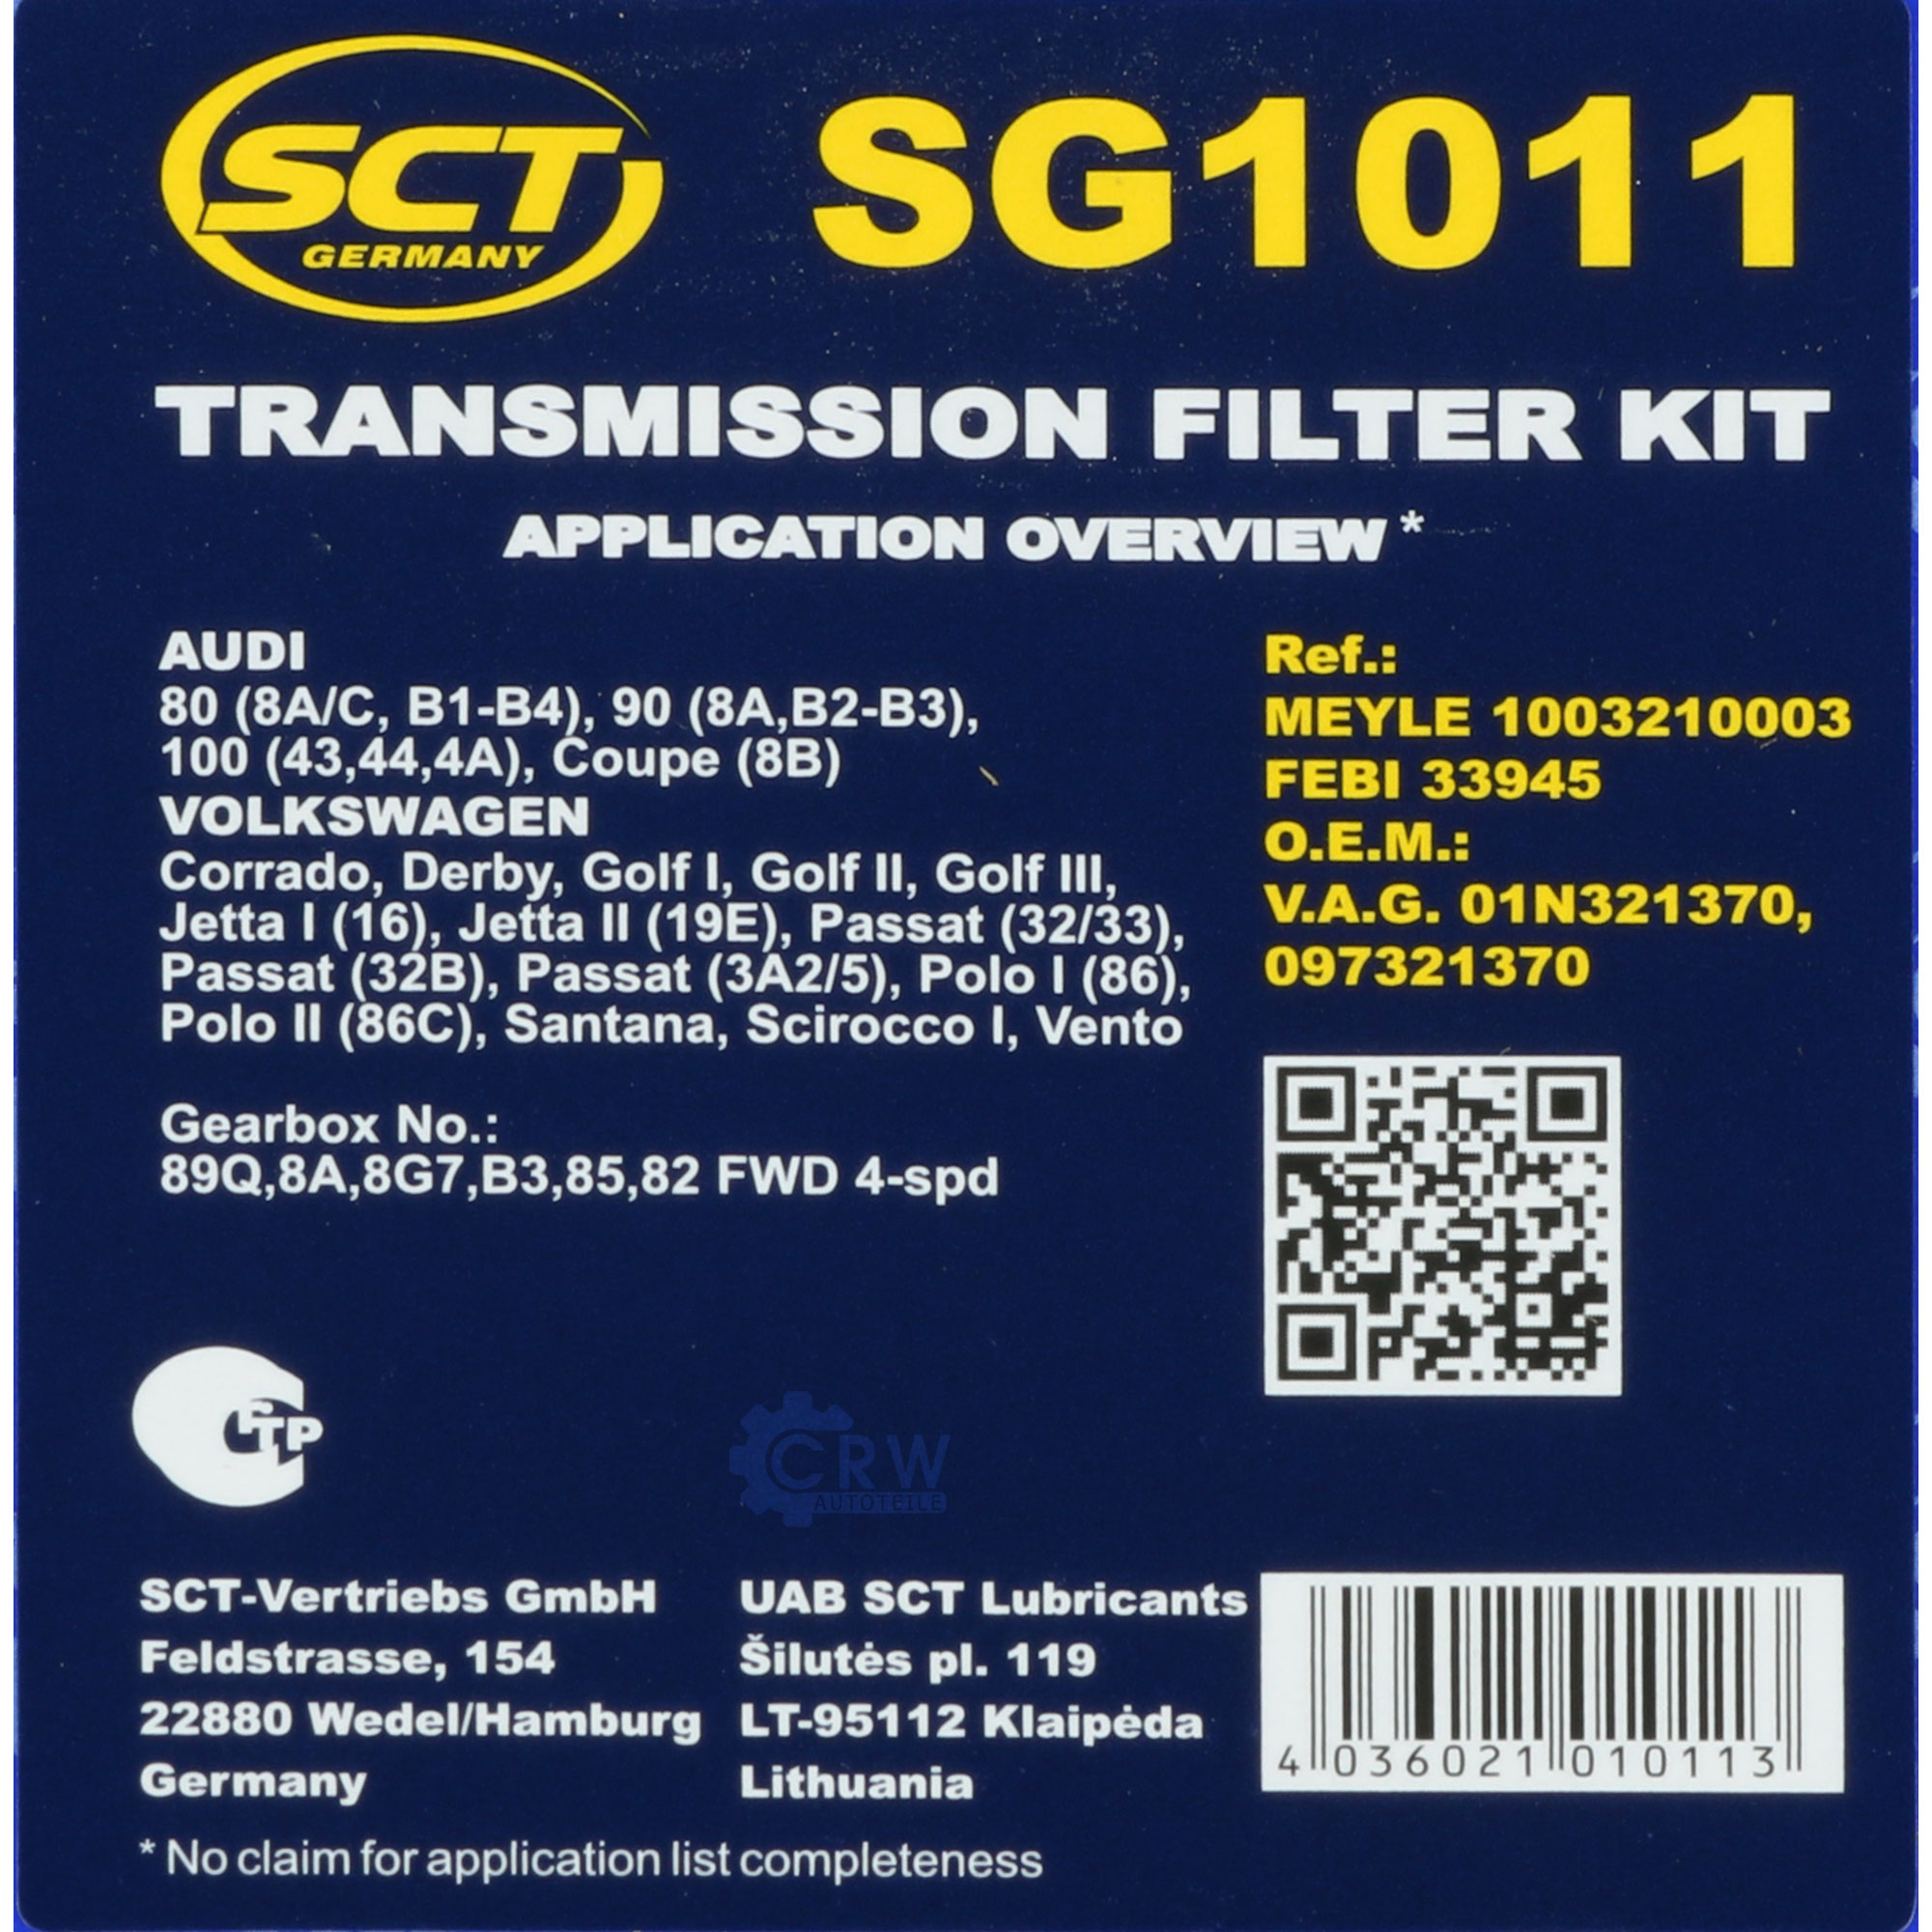 SCT Getriebeölfilter Hydraulikfiltersatz für Automatikgetriebe SG 1011